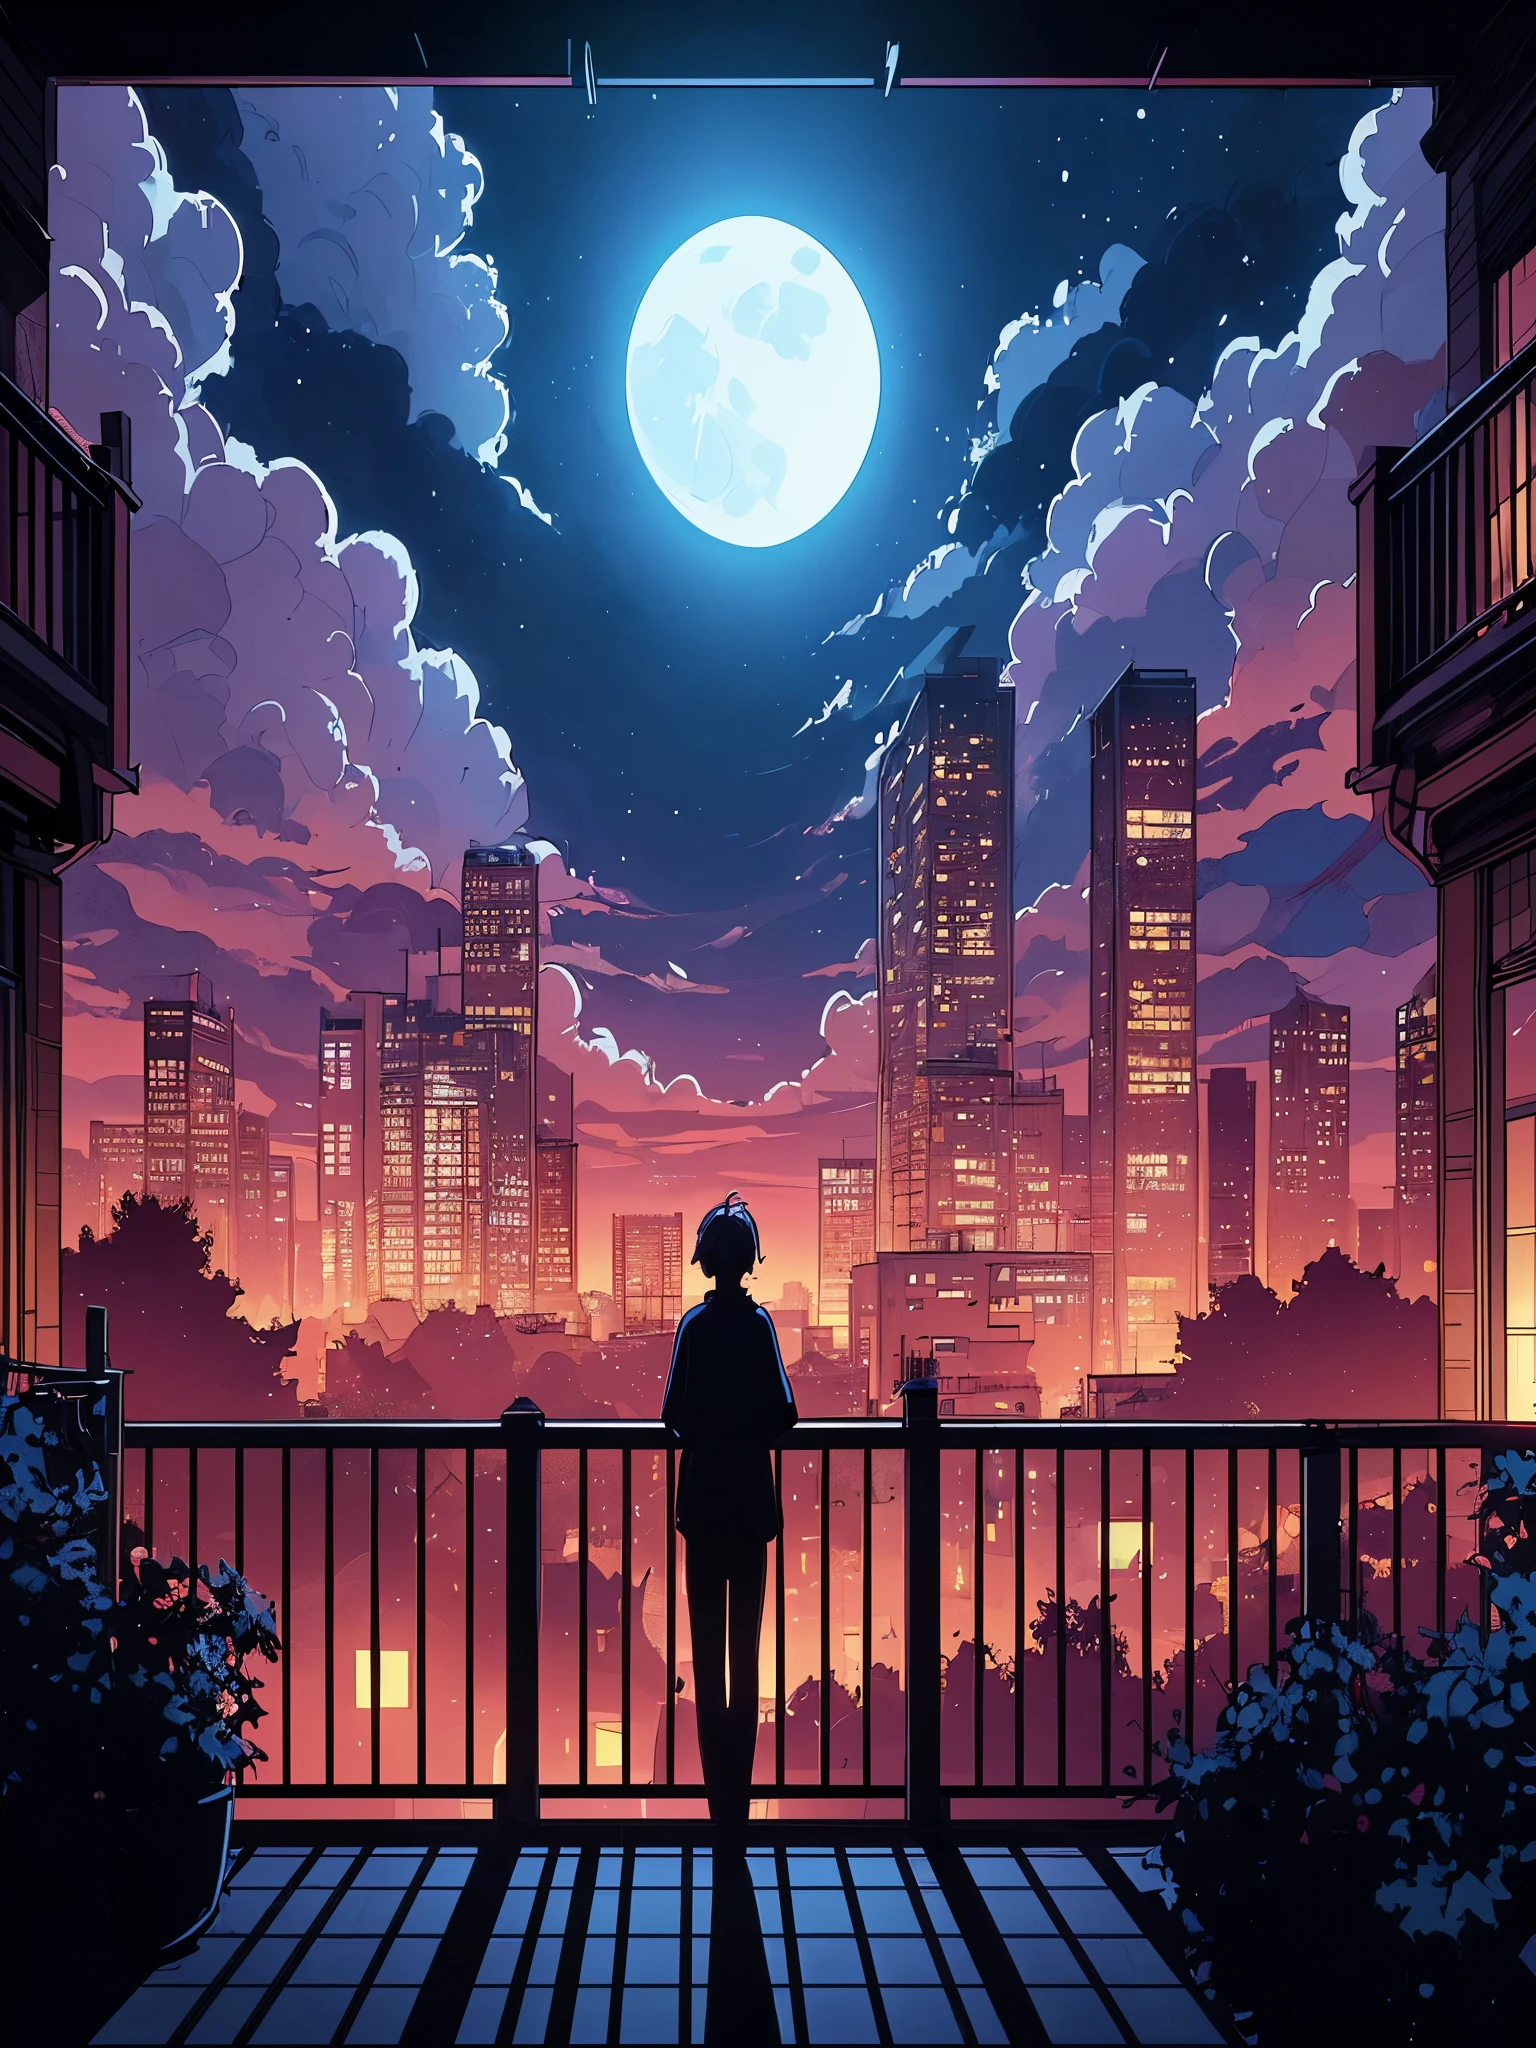 Dibuja una línea de anime digital simple de una amplia escena lofi vista desde el balcón, Otro edificio visible con siluetas de personas paradas en su balcón., tenue luz de la luna,, luz tenue, hermoso cielo nublado, vibrant color tones, Obra maestra, escena pacífica